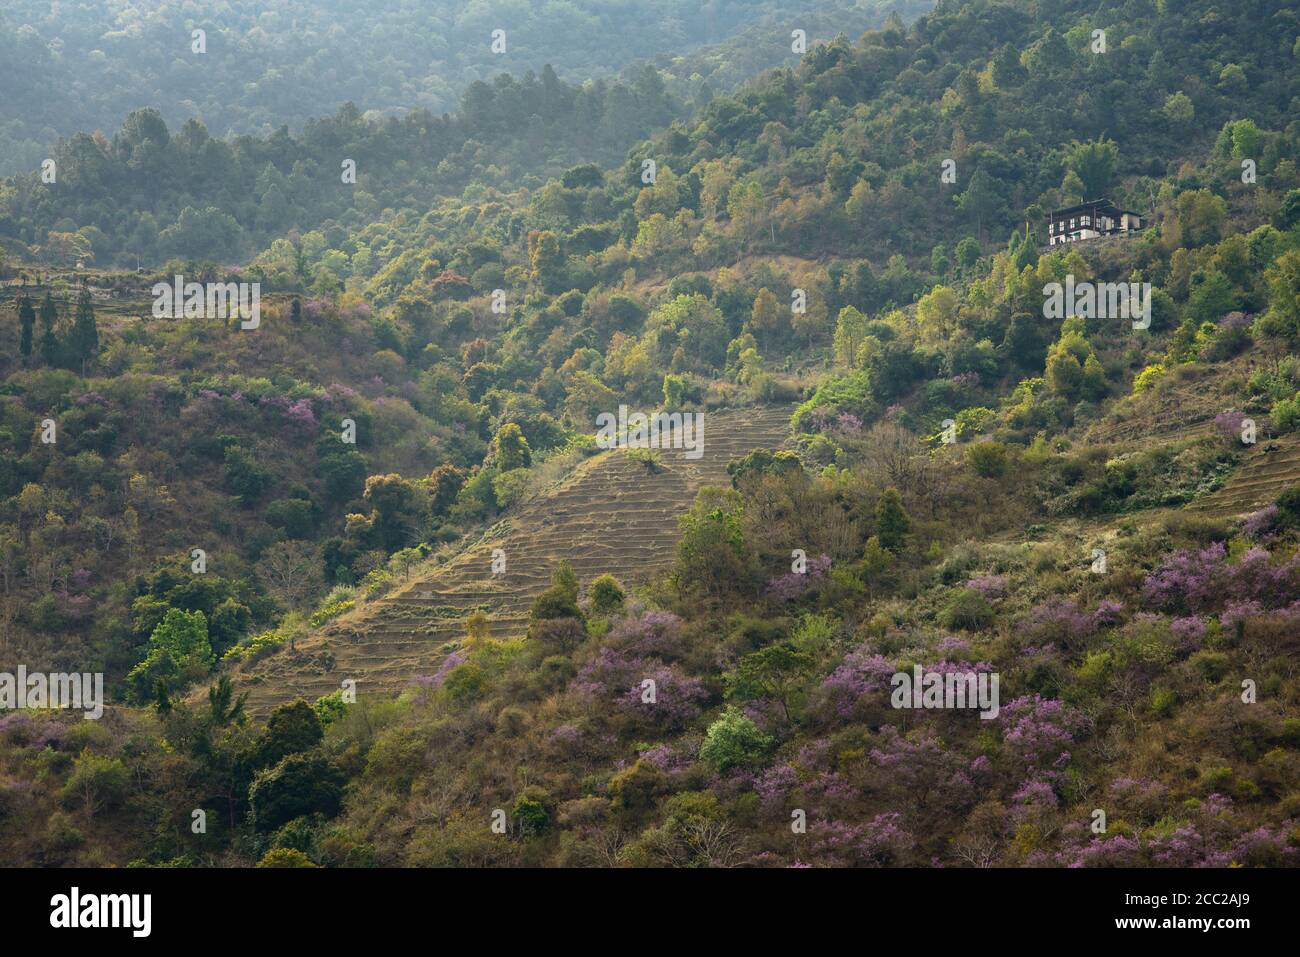 Bhutan, Landscape with flourishing indigo bushes and trees Stock Photo